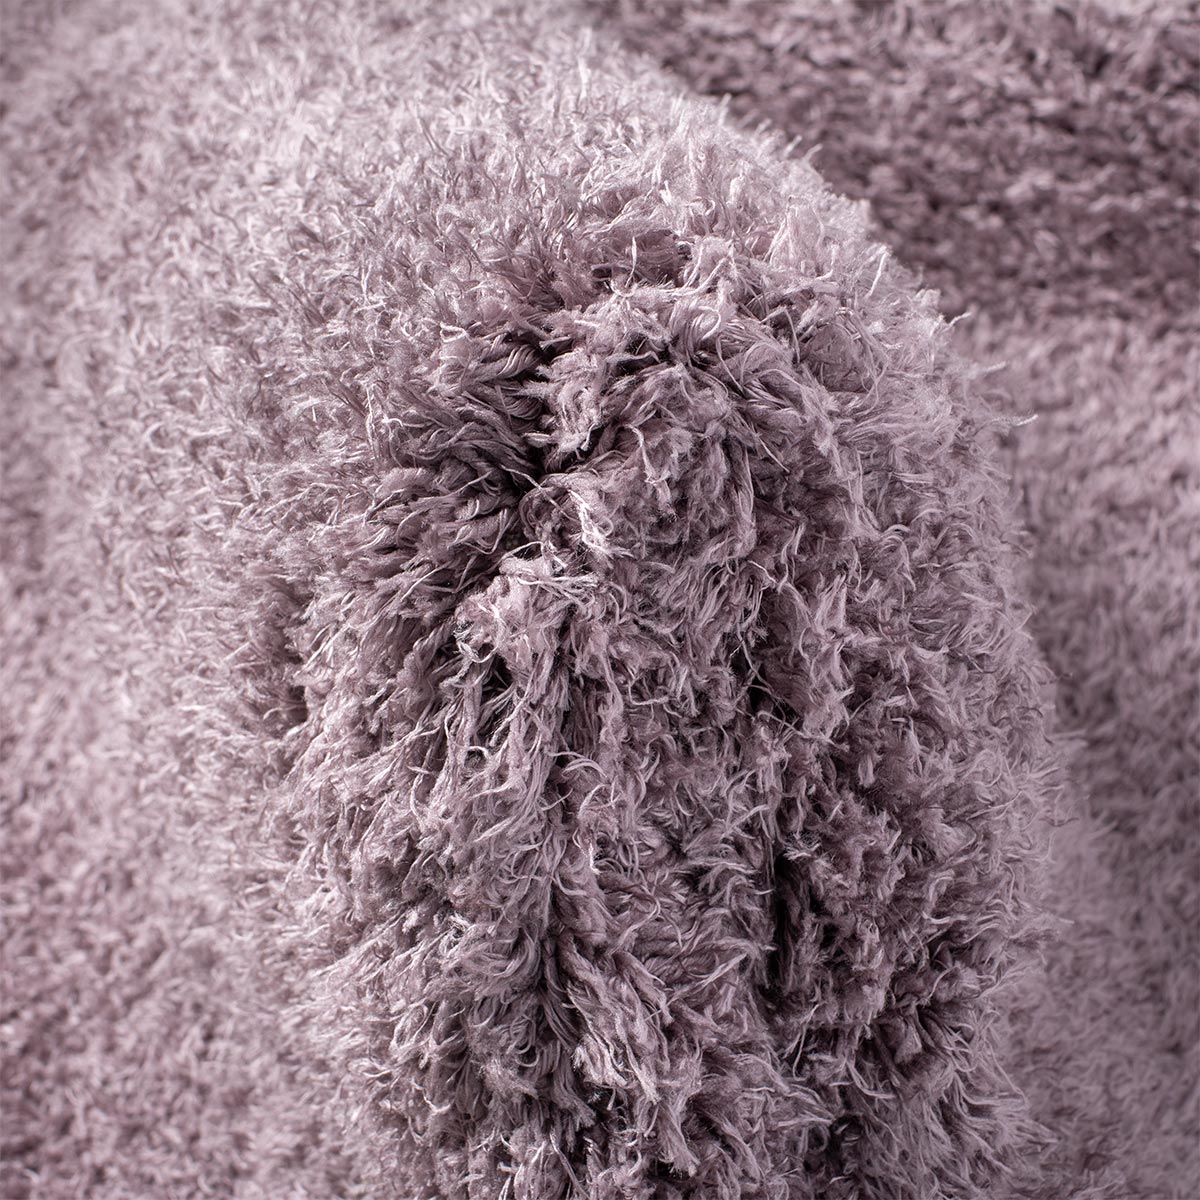 שטיח שאגי קטיפה 01 סגול עגול | השטיח האדום